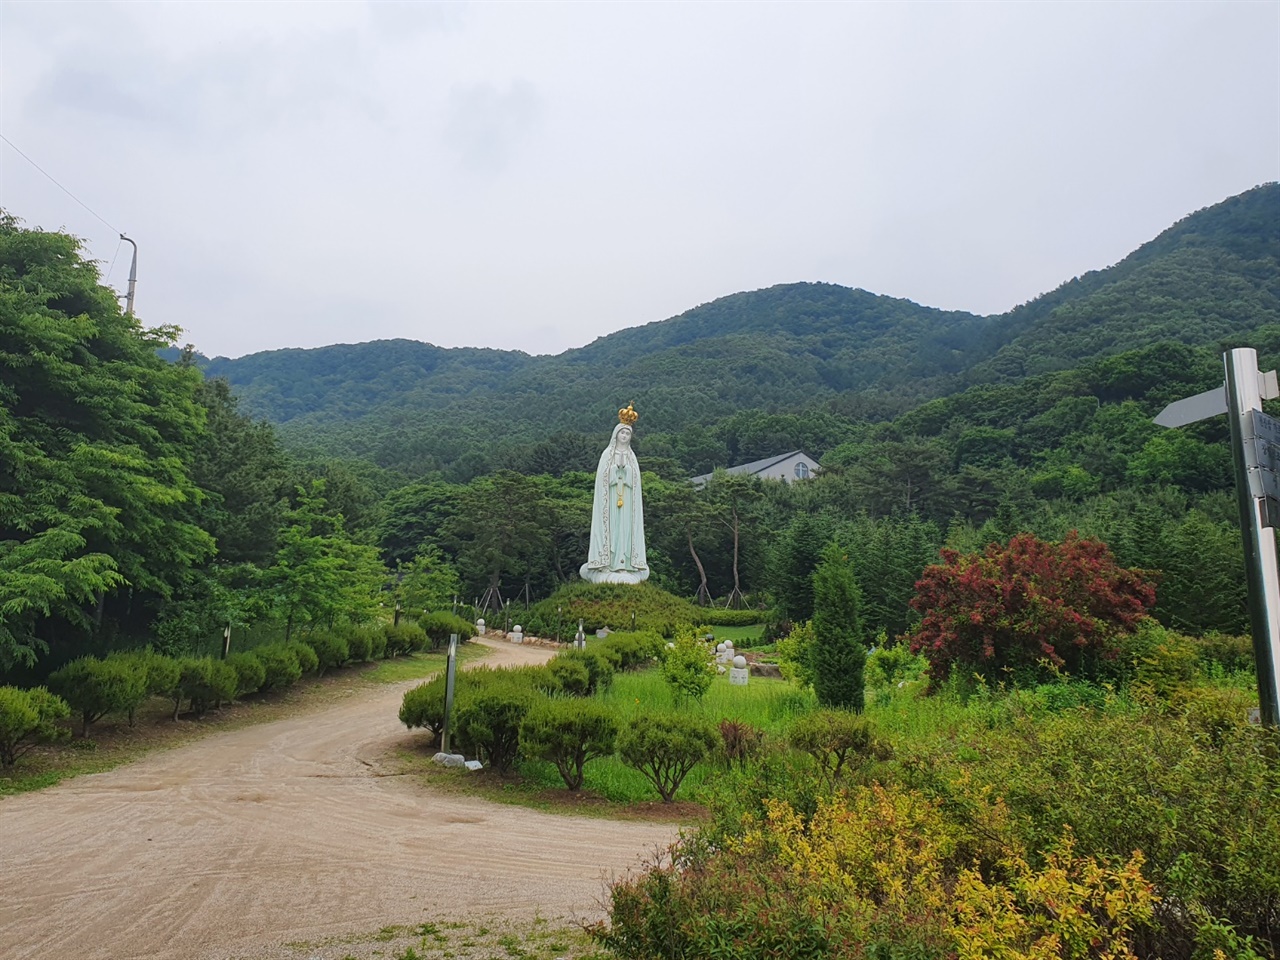 한국 천주교의 발상지라고 알려져 있는 천진암성지는 현재 100년의 계획을 세우고 아시아에서 가장 큰 성당을 건립하기 위한 준비를 하고 있었다.